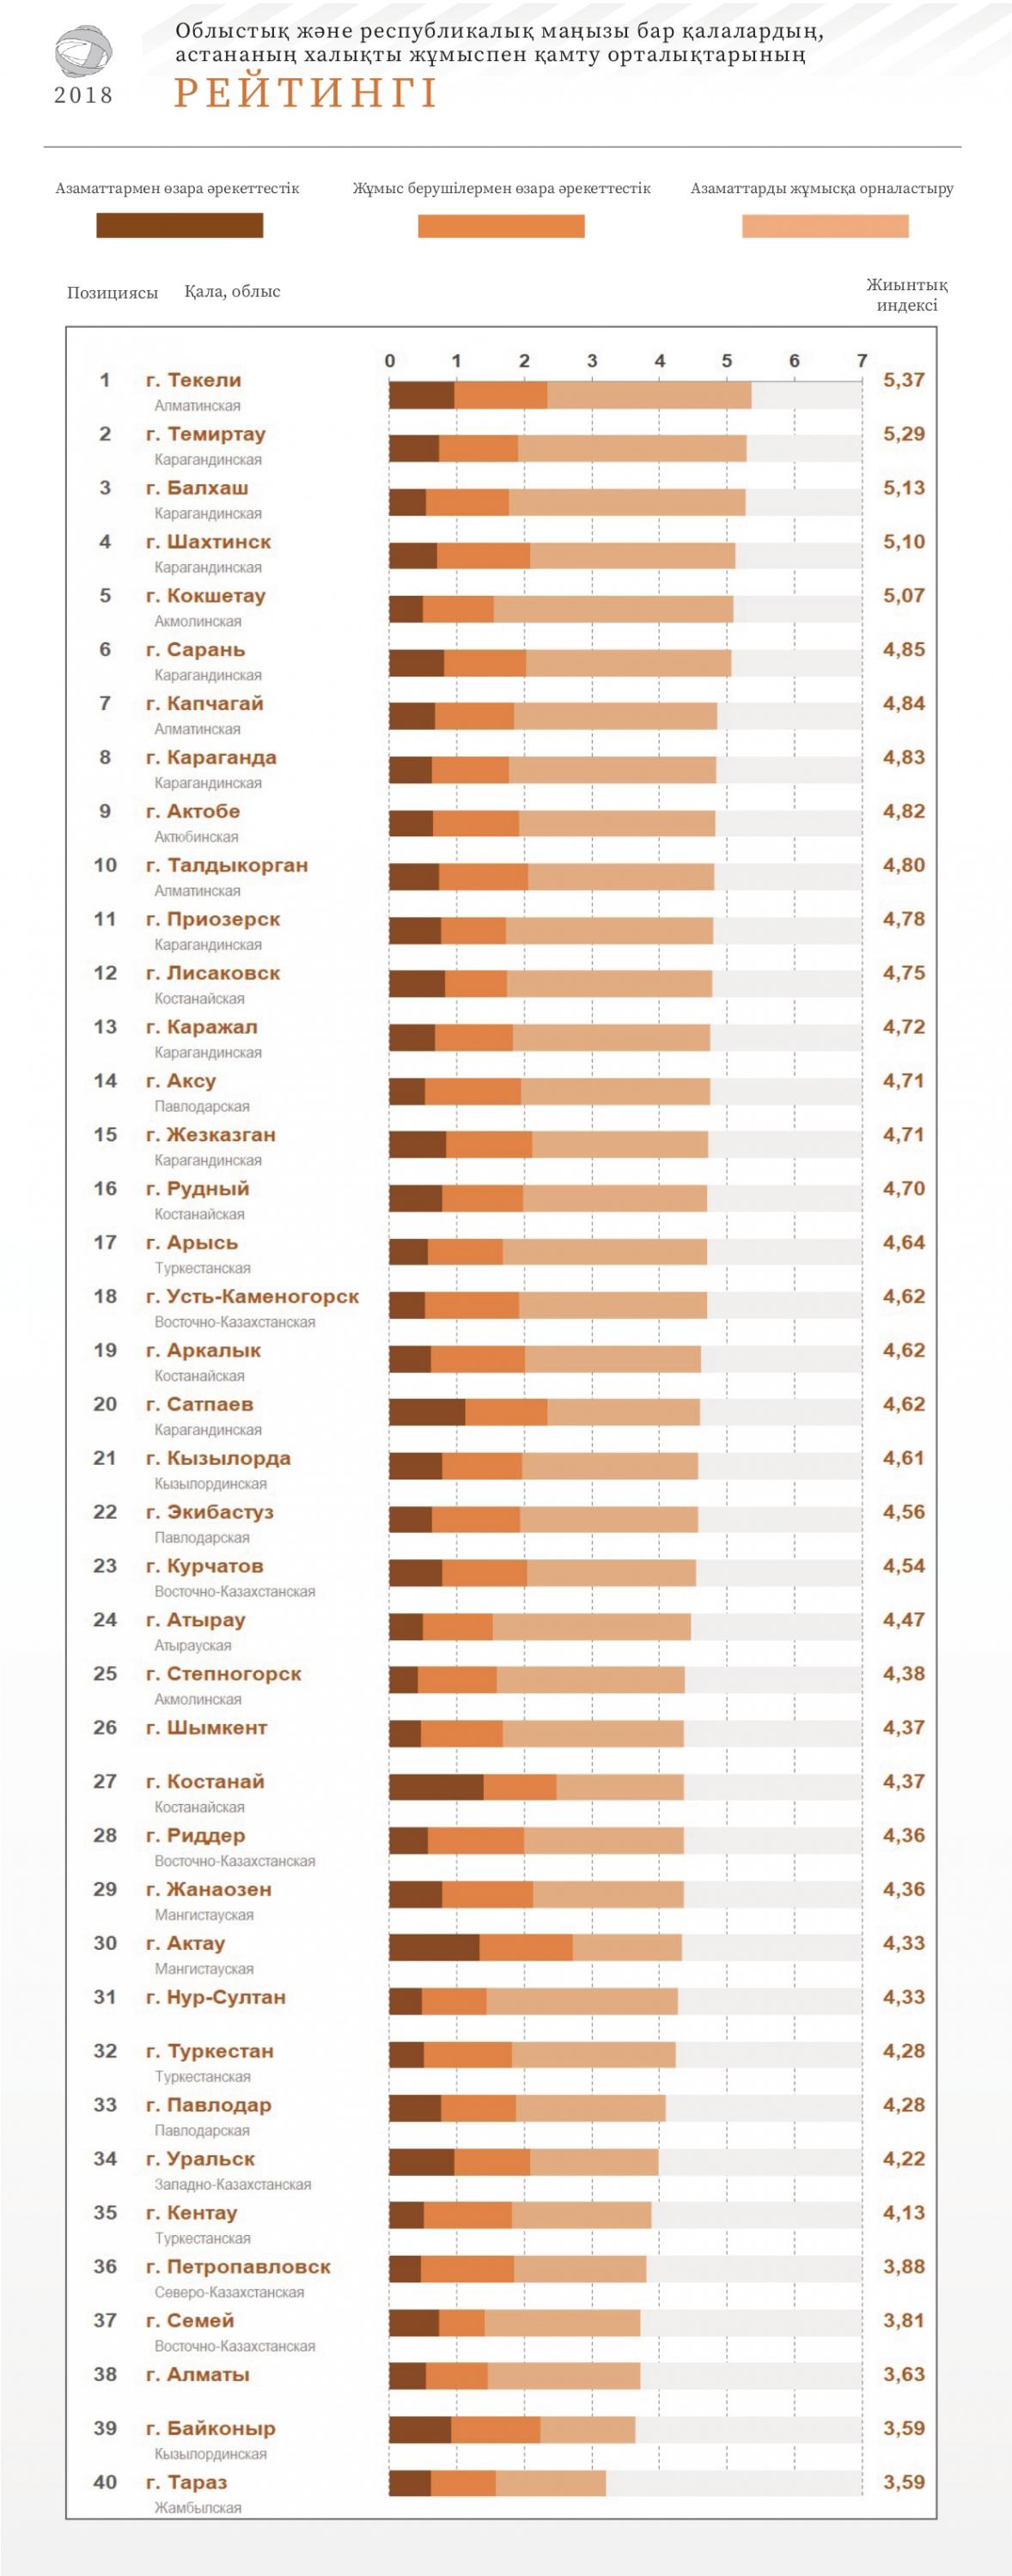 2018 жылғы халықты жұмыспен қамту орталықтарының рейтингі бойынша ақпарат